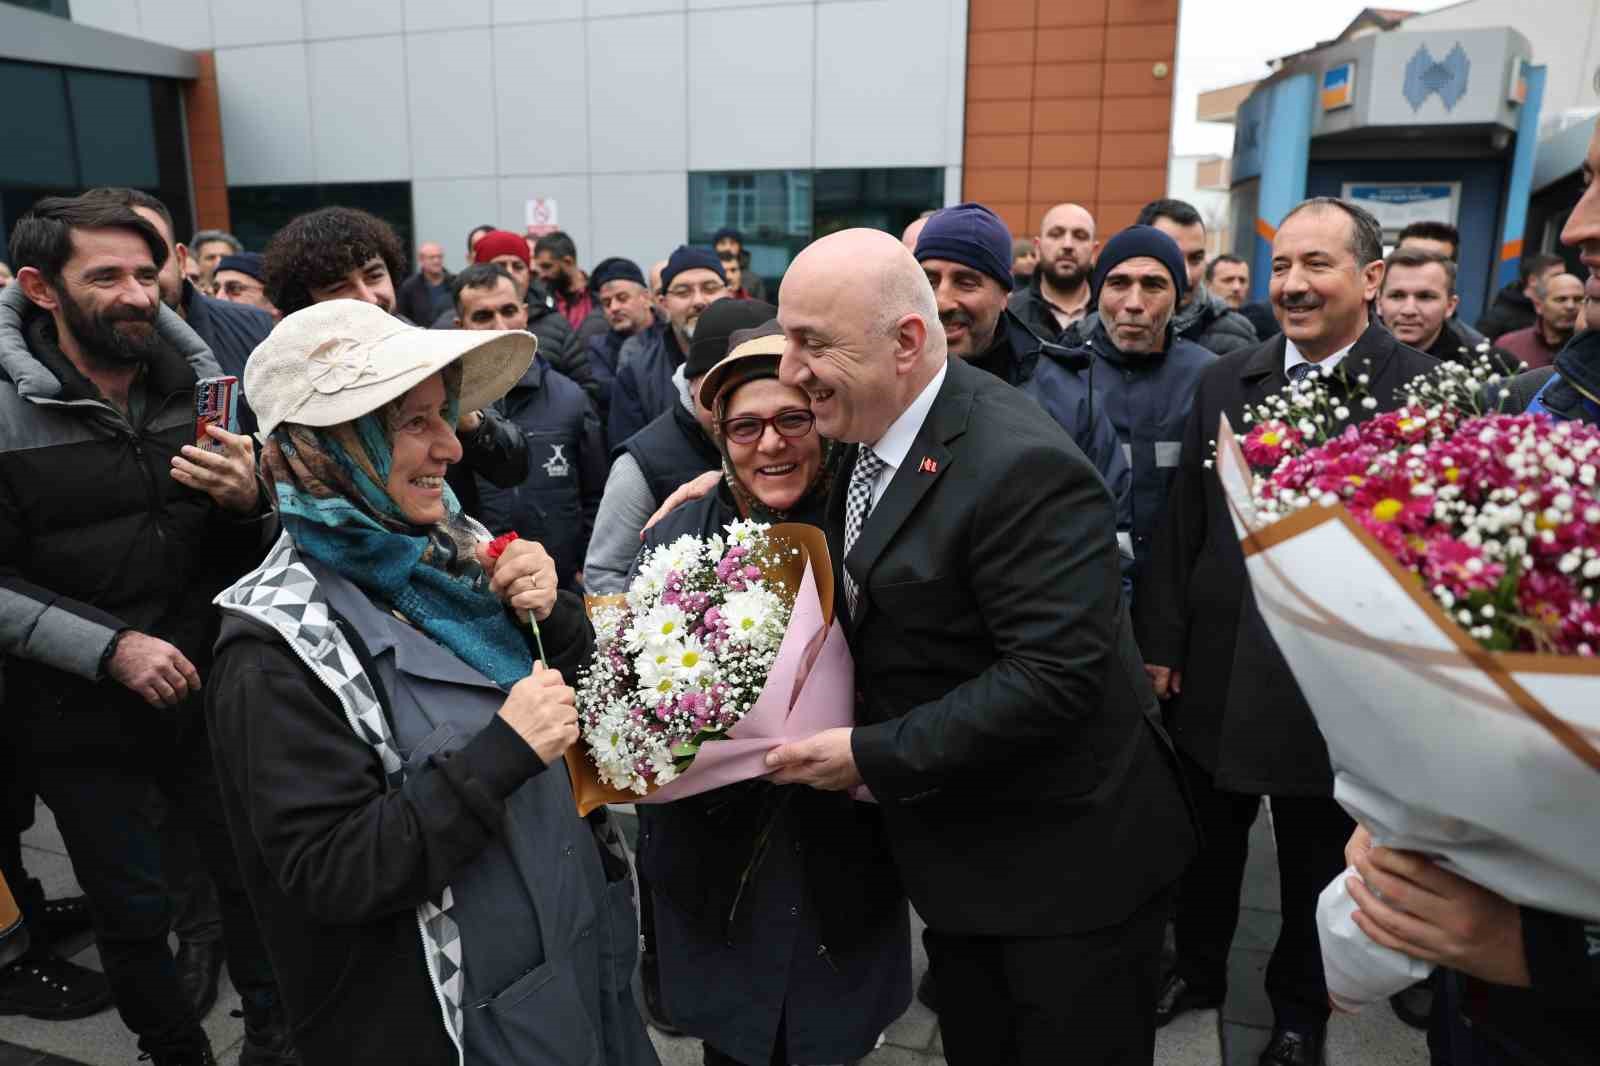 Personeller Başkan Bıyık’ı çiçeklerle karşıladı